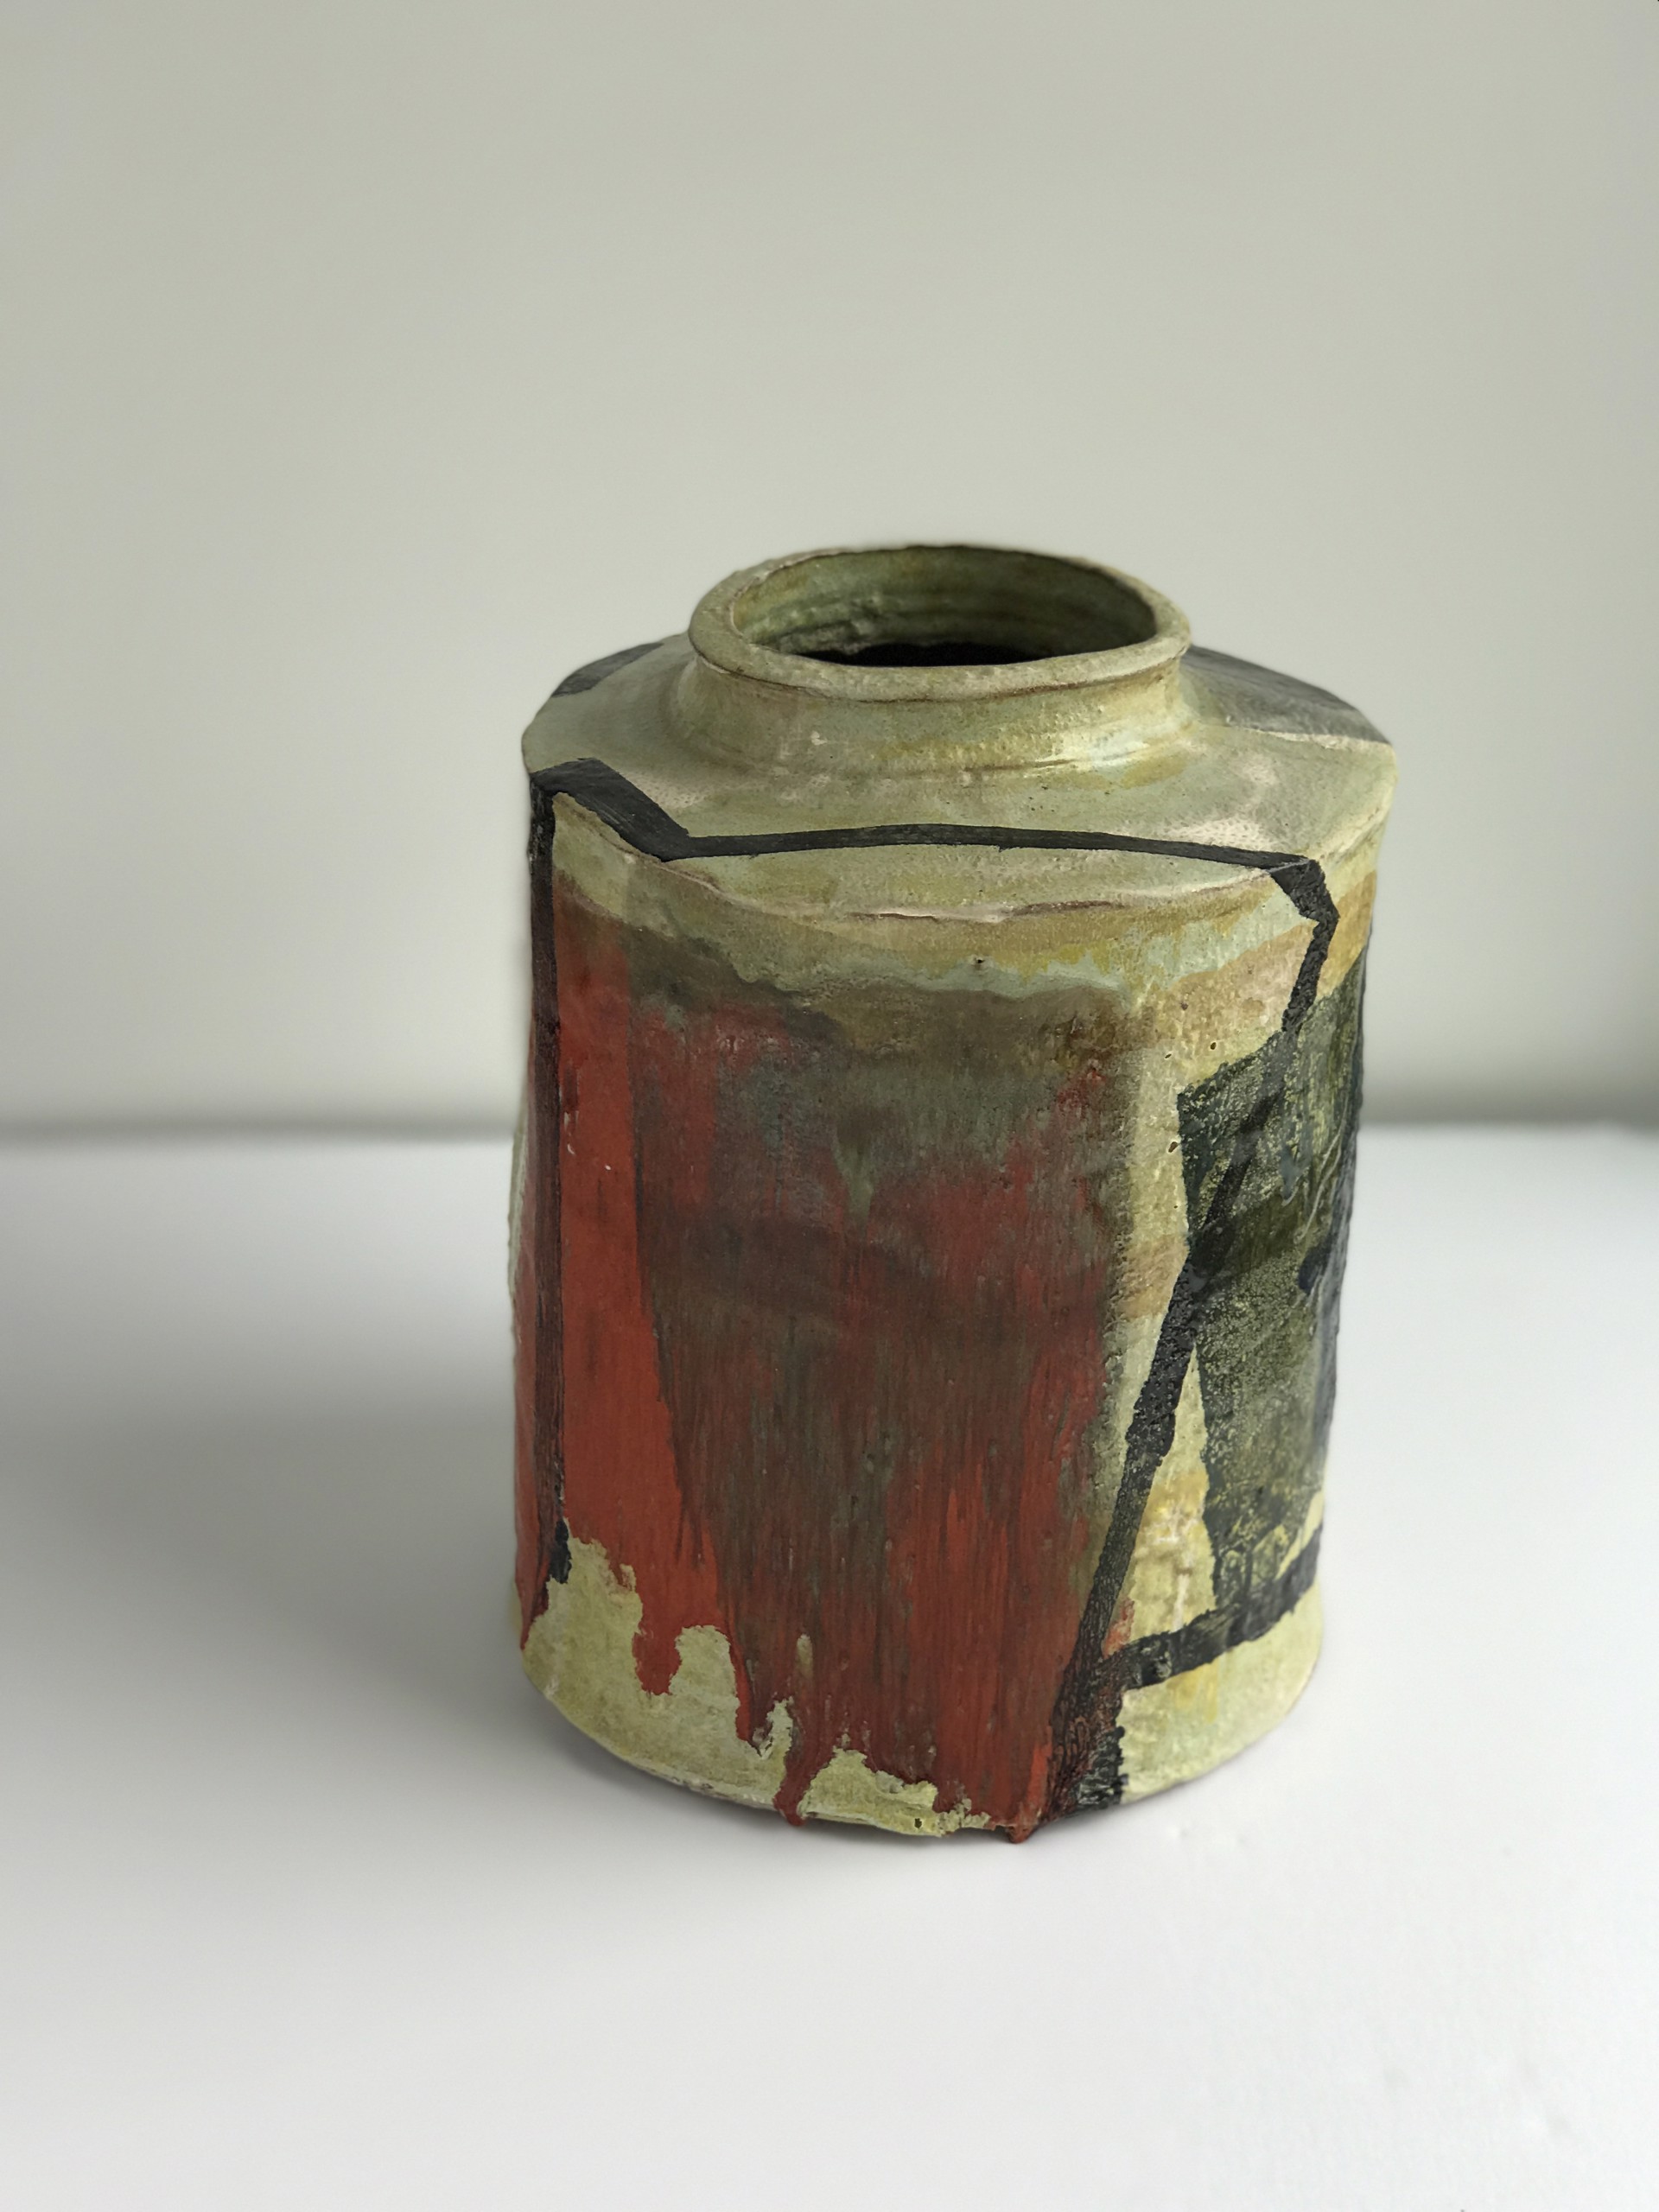 OR (gnuevo) Jar by Jim Shrosbree